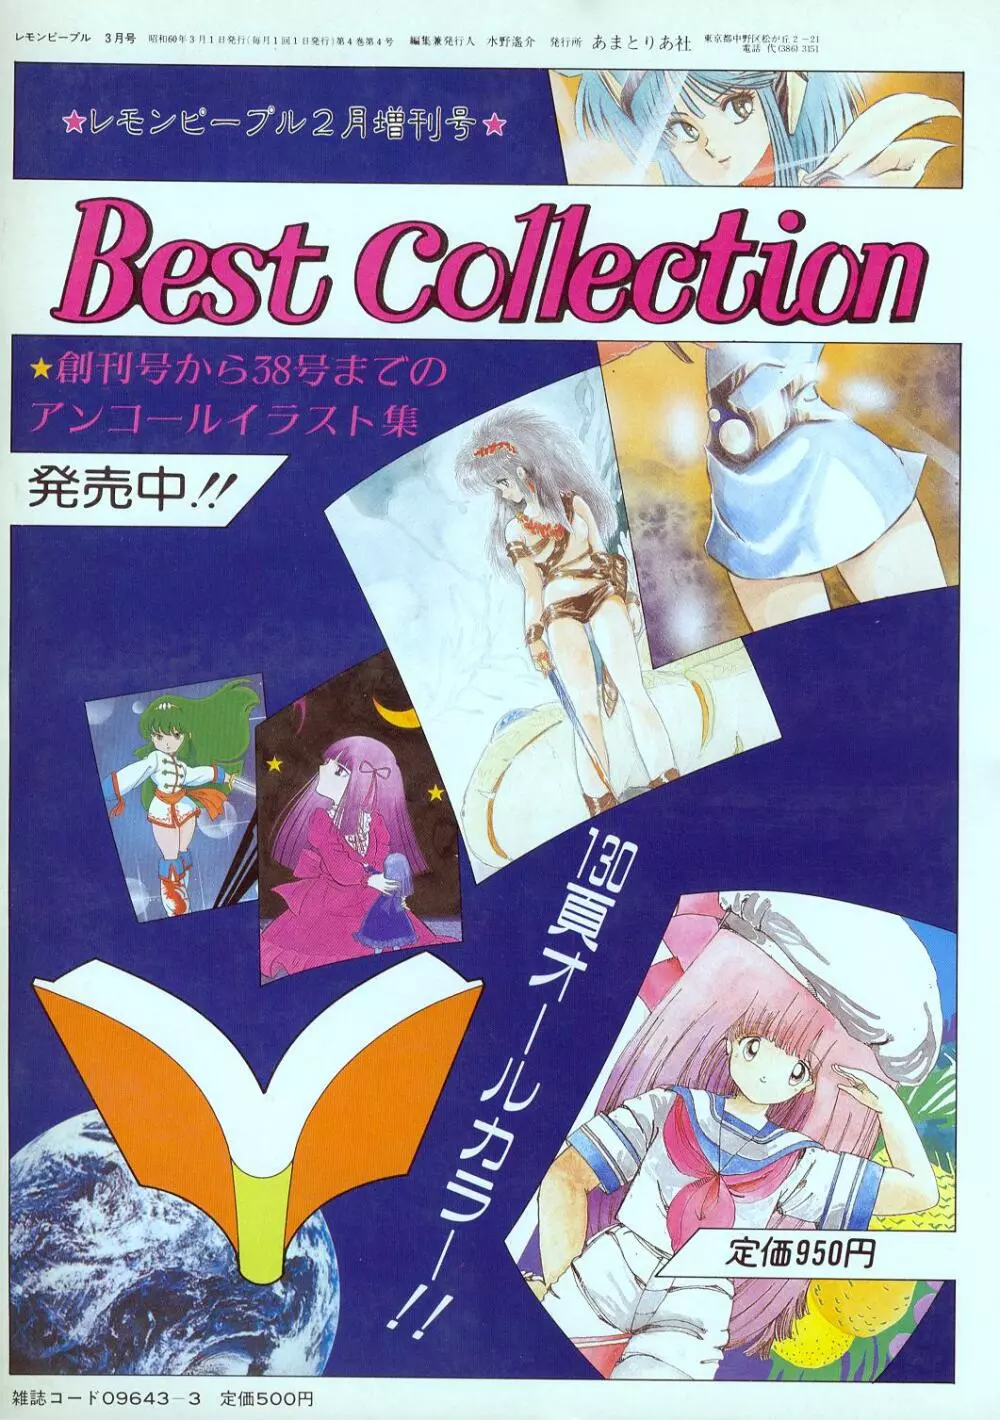 レモンピープル 1985年2月増刊号 Vol.38 Best Collection 135ページ